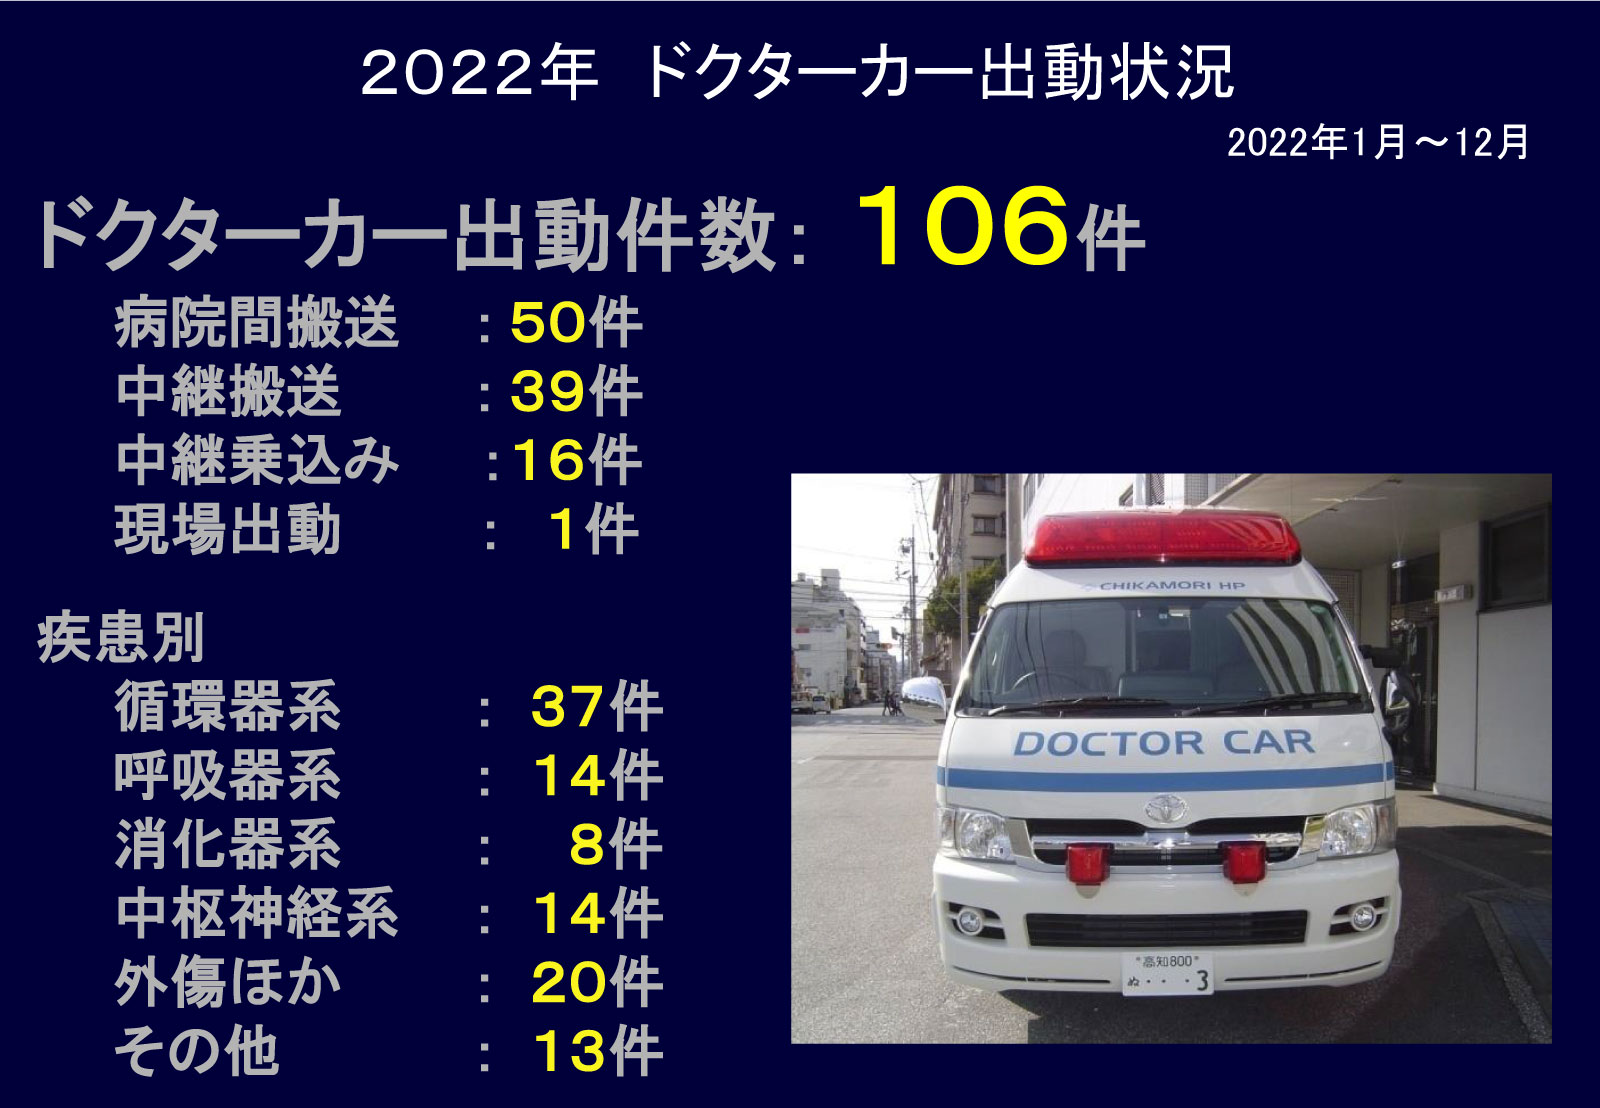 図10 2022年ドクターカー出動状況.jpg